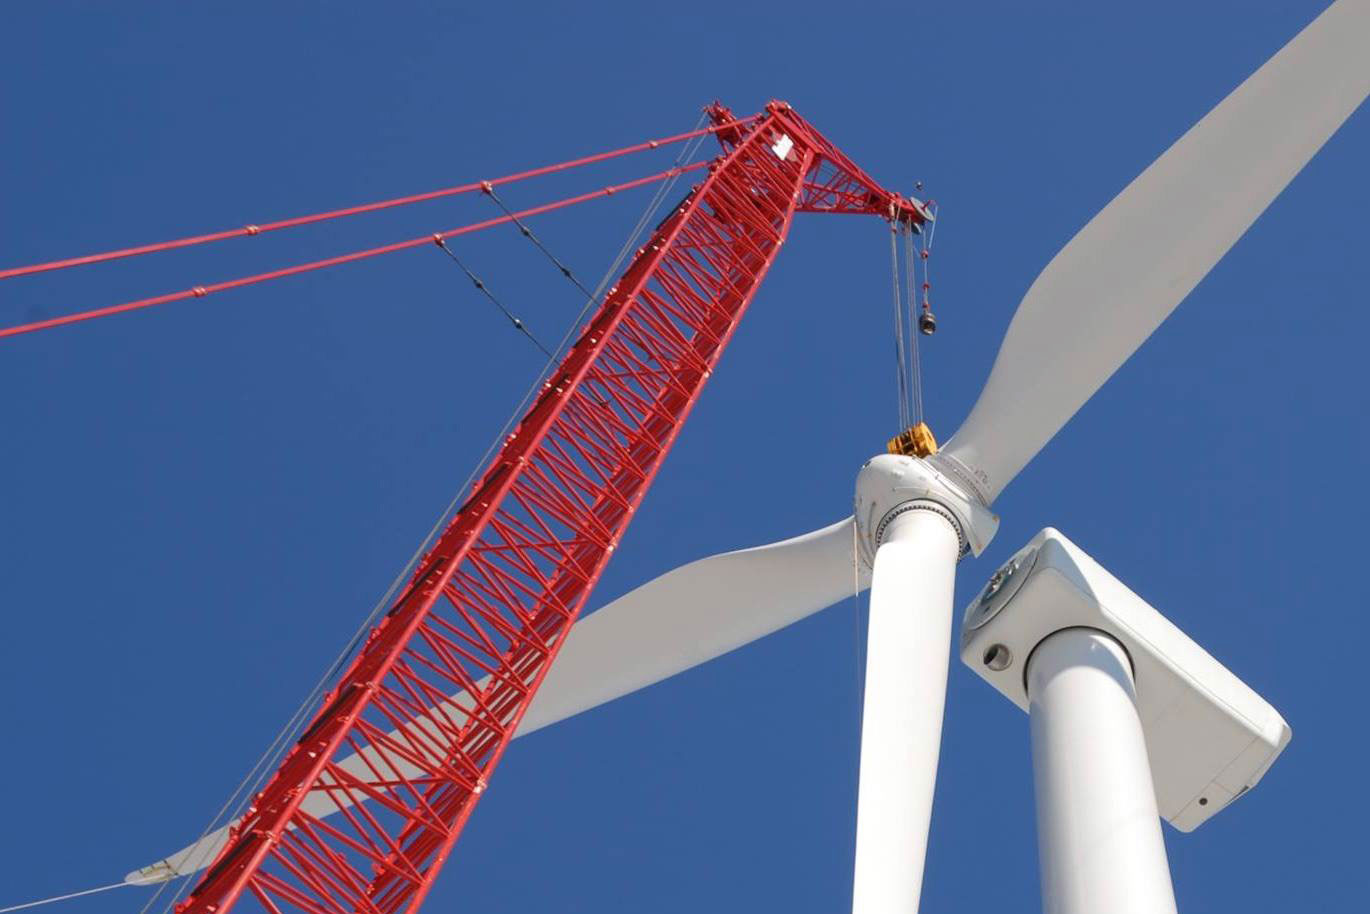 A crane assembling a wind turbine